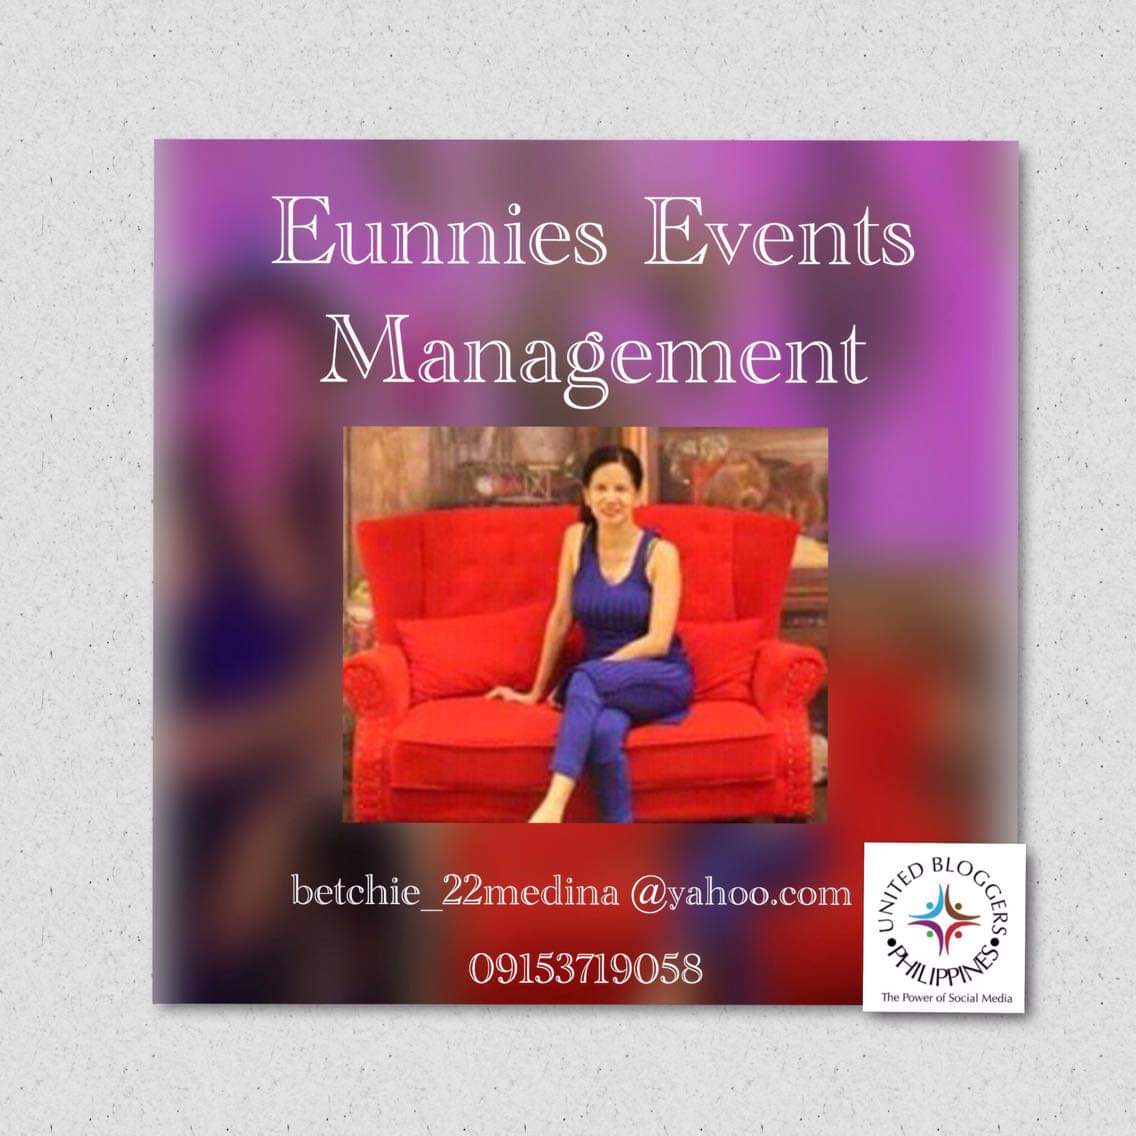 Eunnies Events Management